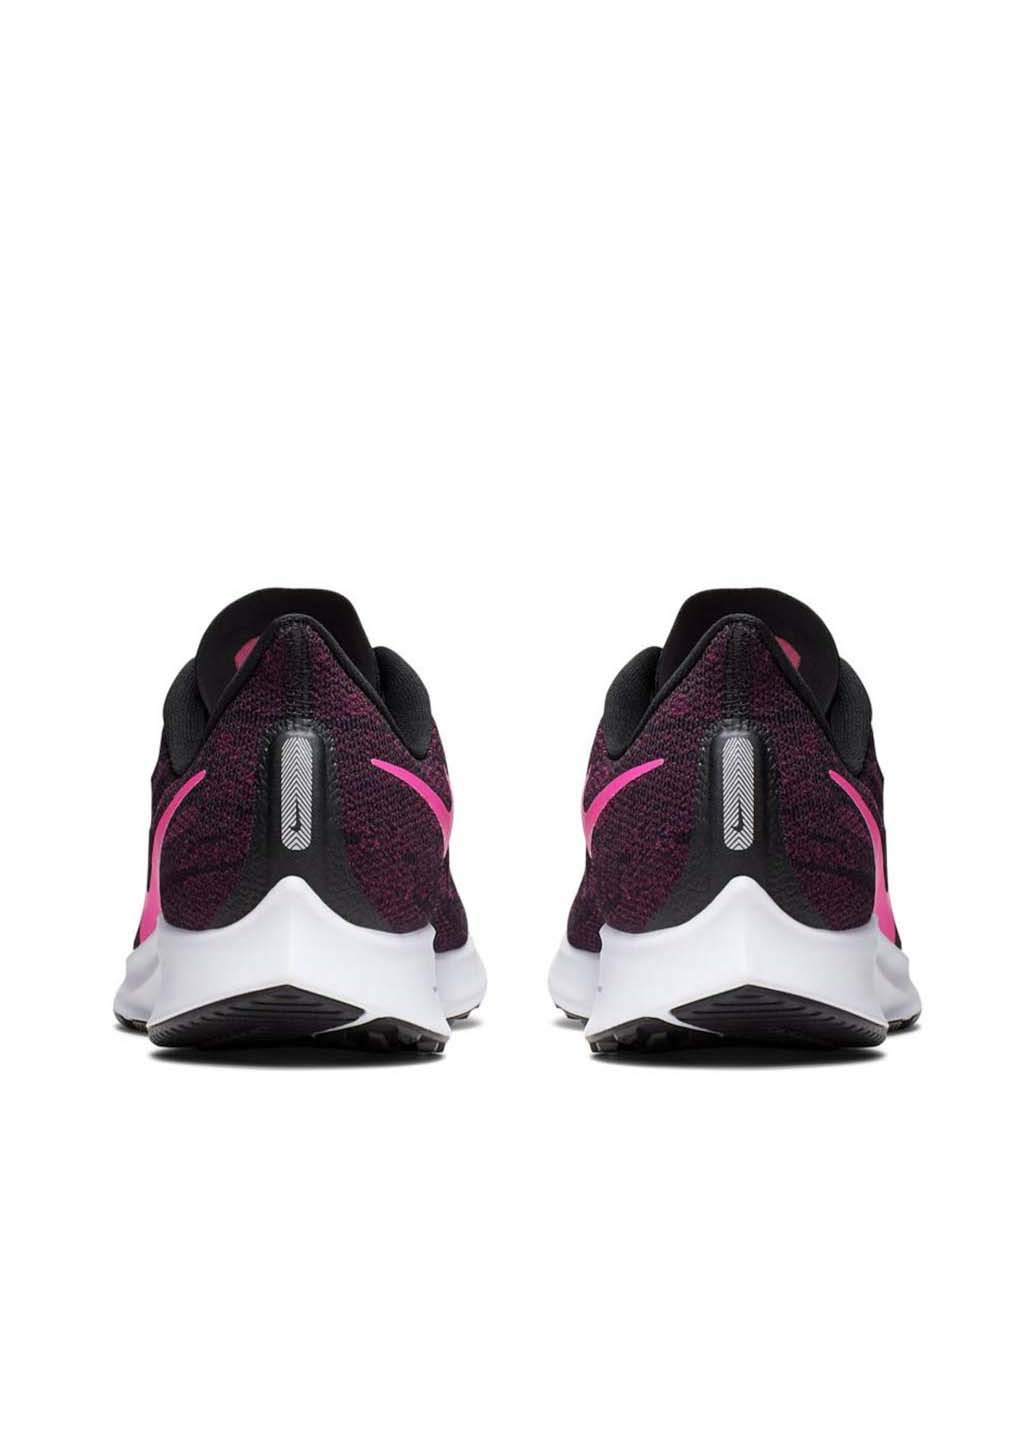 Цветные демисезонные кроссовки wmns air zoom pegasus Nike